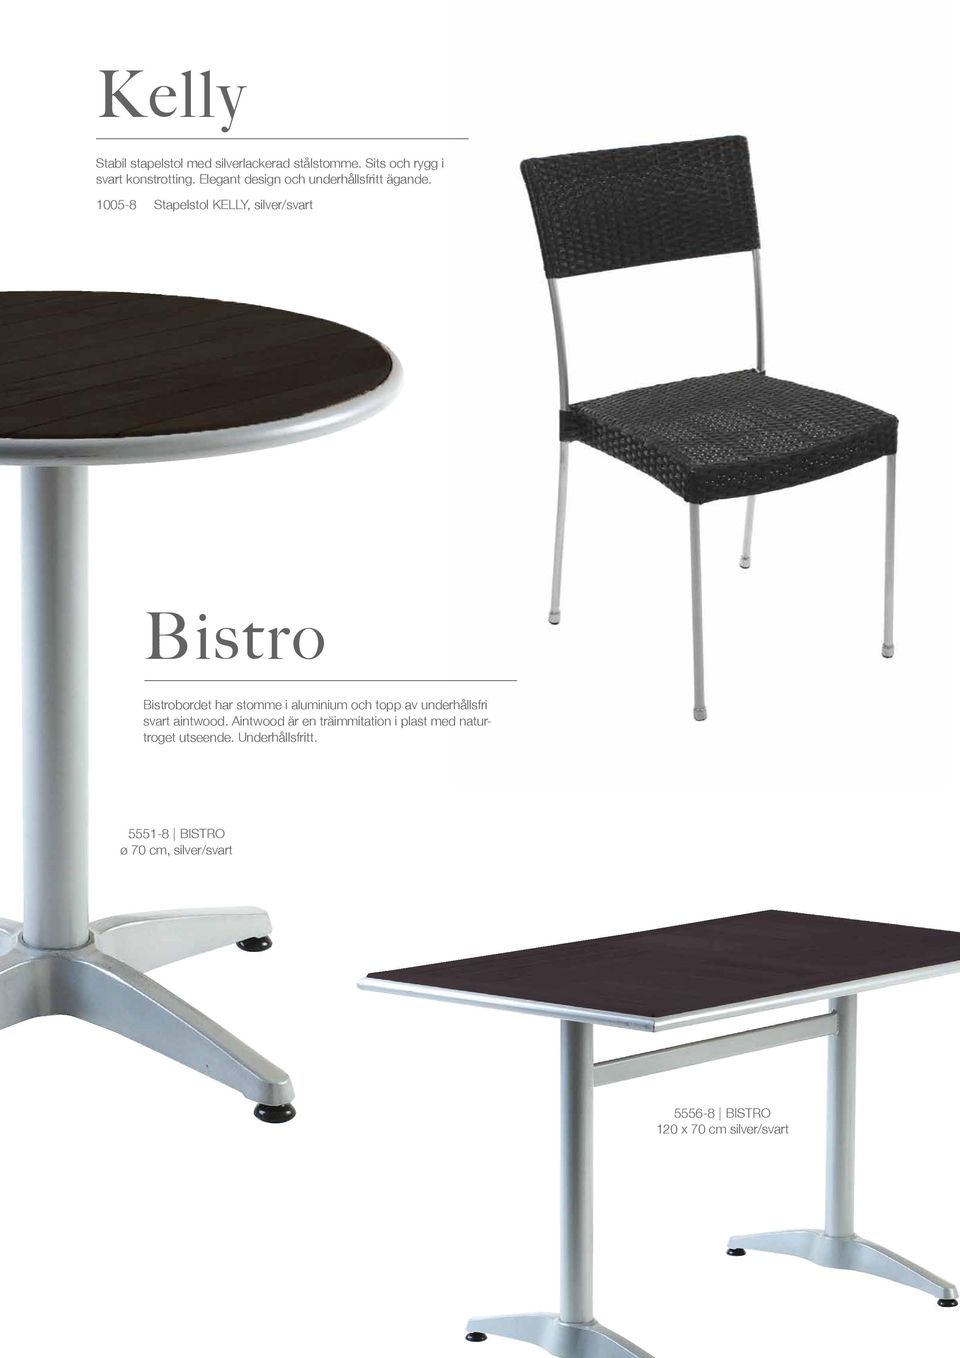 1005-8 Stapelstol KELLY, silver/svart Bistro Bistrobordet har stomme i aluminium och topp av